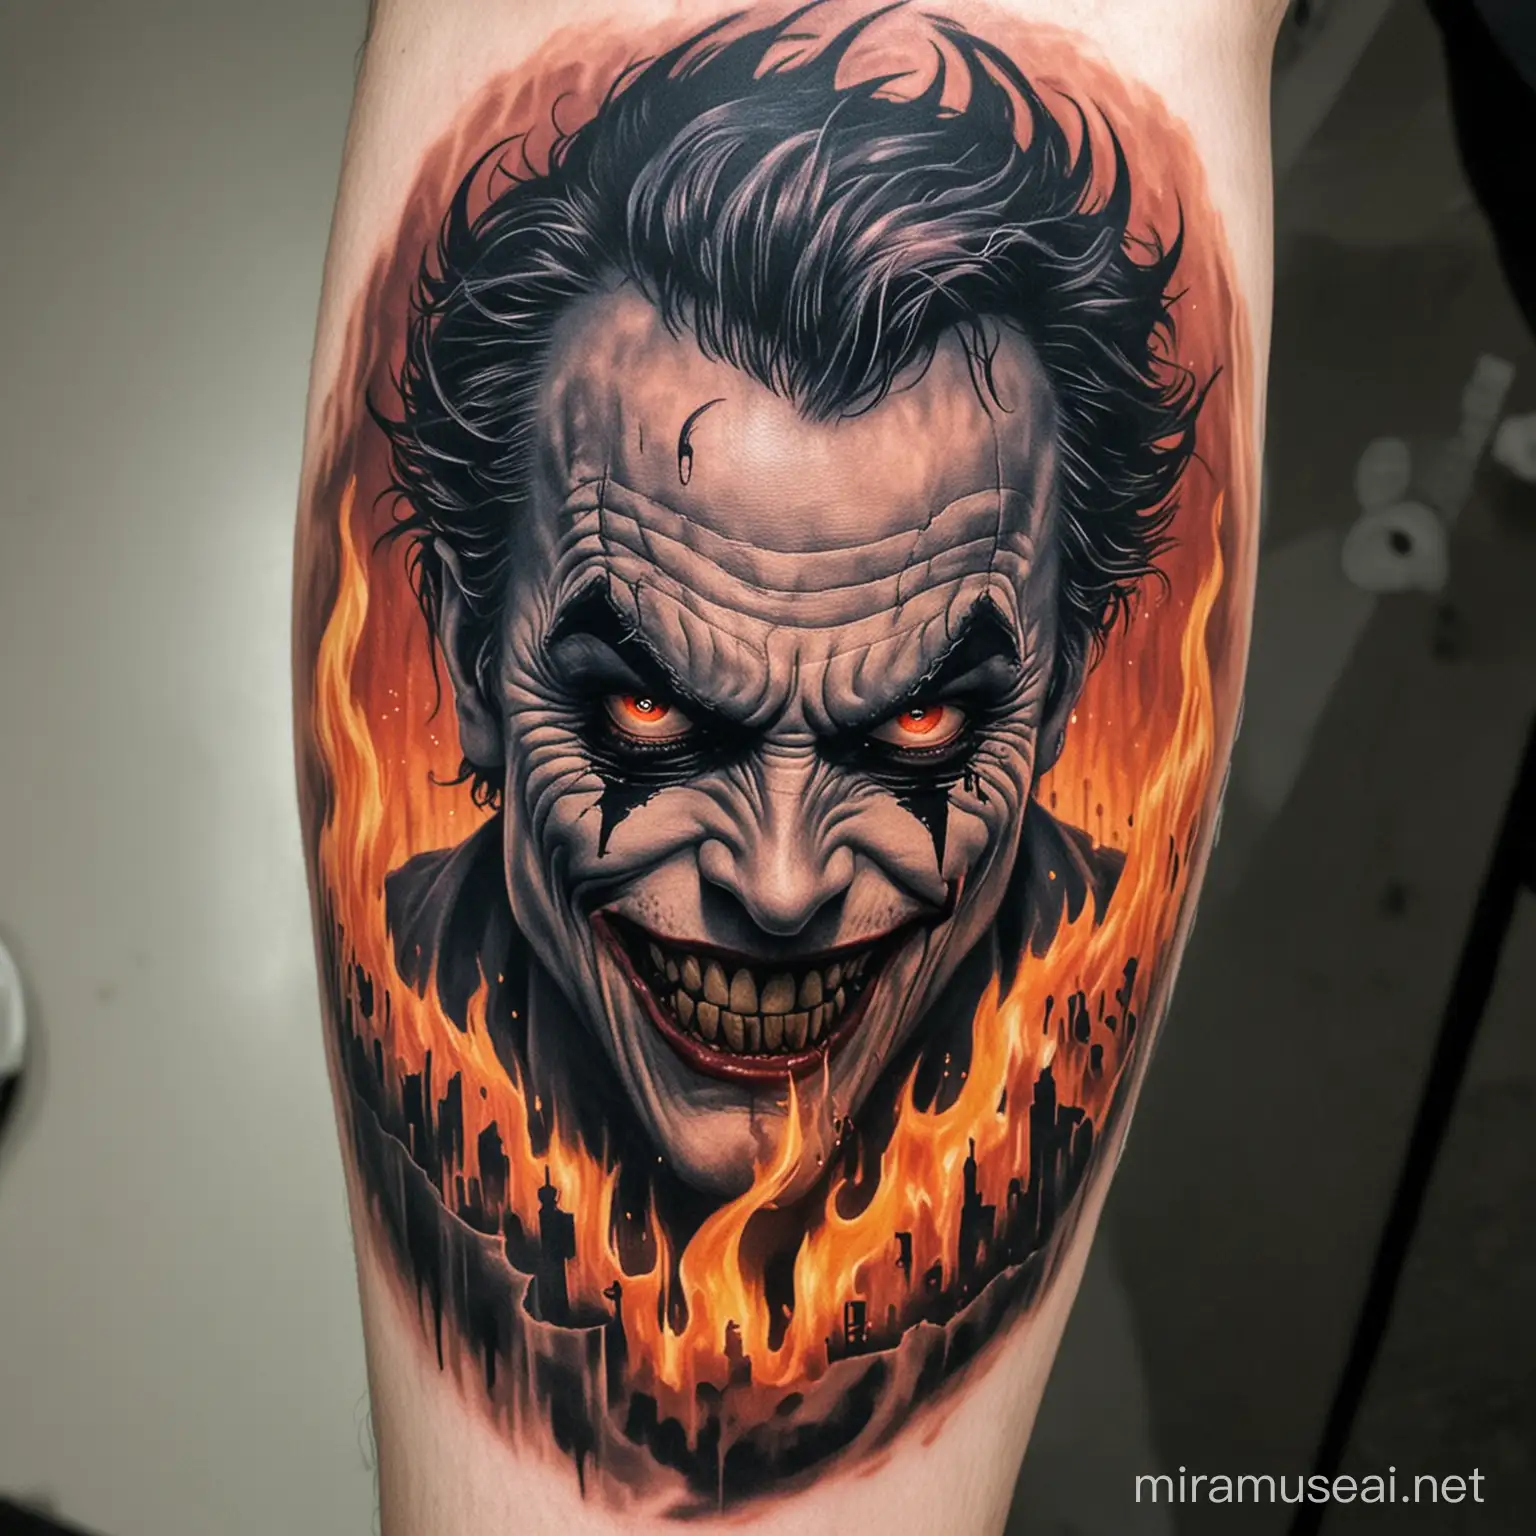 Sinister Joker Tattoo Enveloped in Fiery Gaze